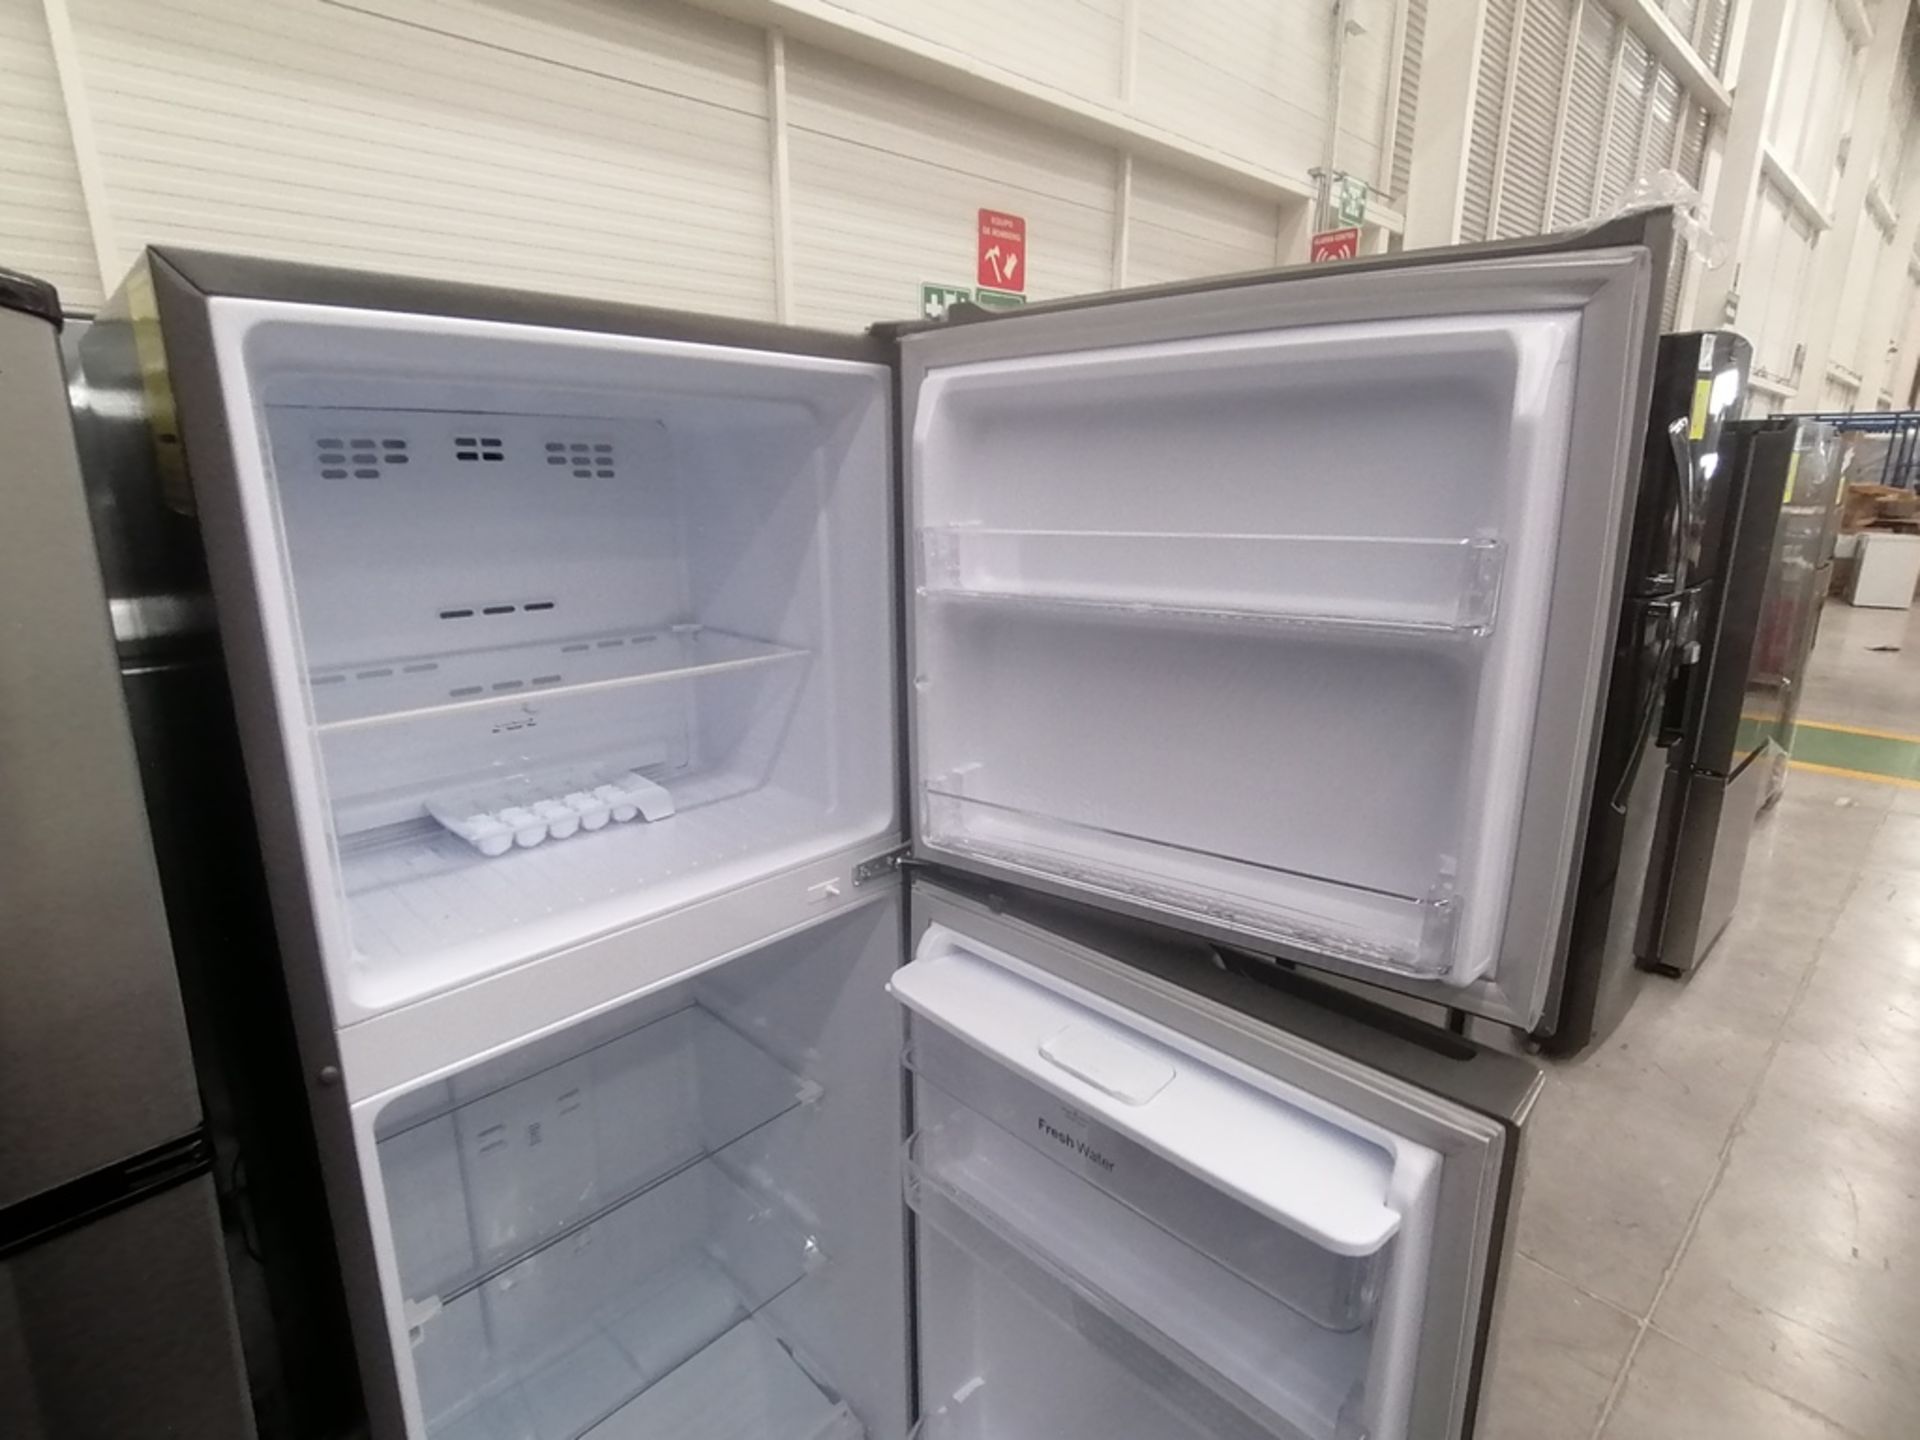 Lote de 2 refrigeradores incluye: 1 Refrigerador con dispensador de agua, Marca Winia, Modelo DFR32 - Image 11 of 15